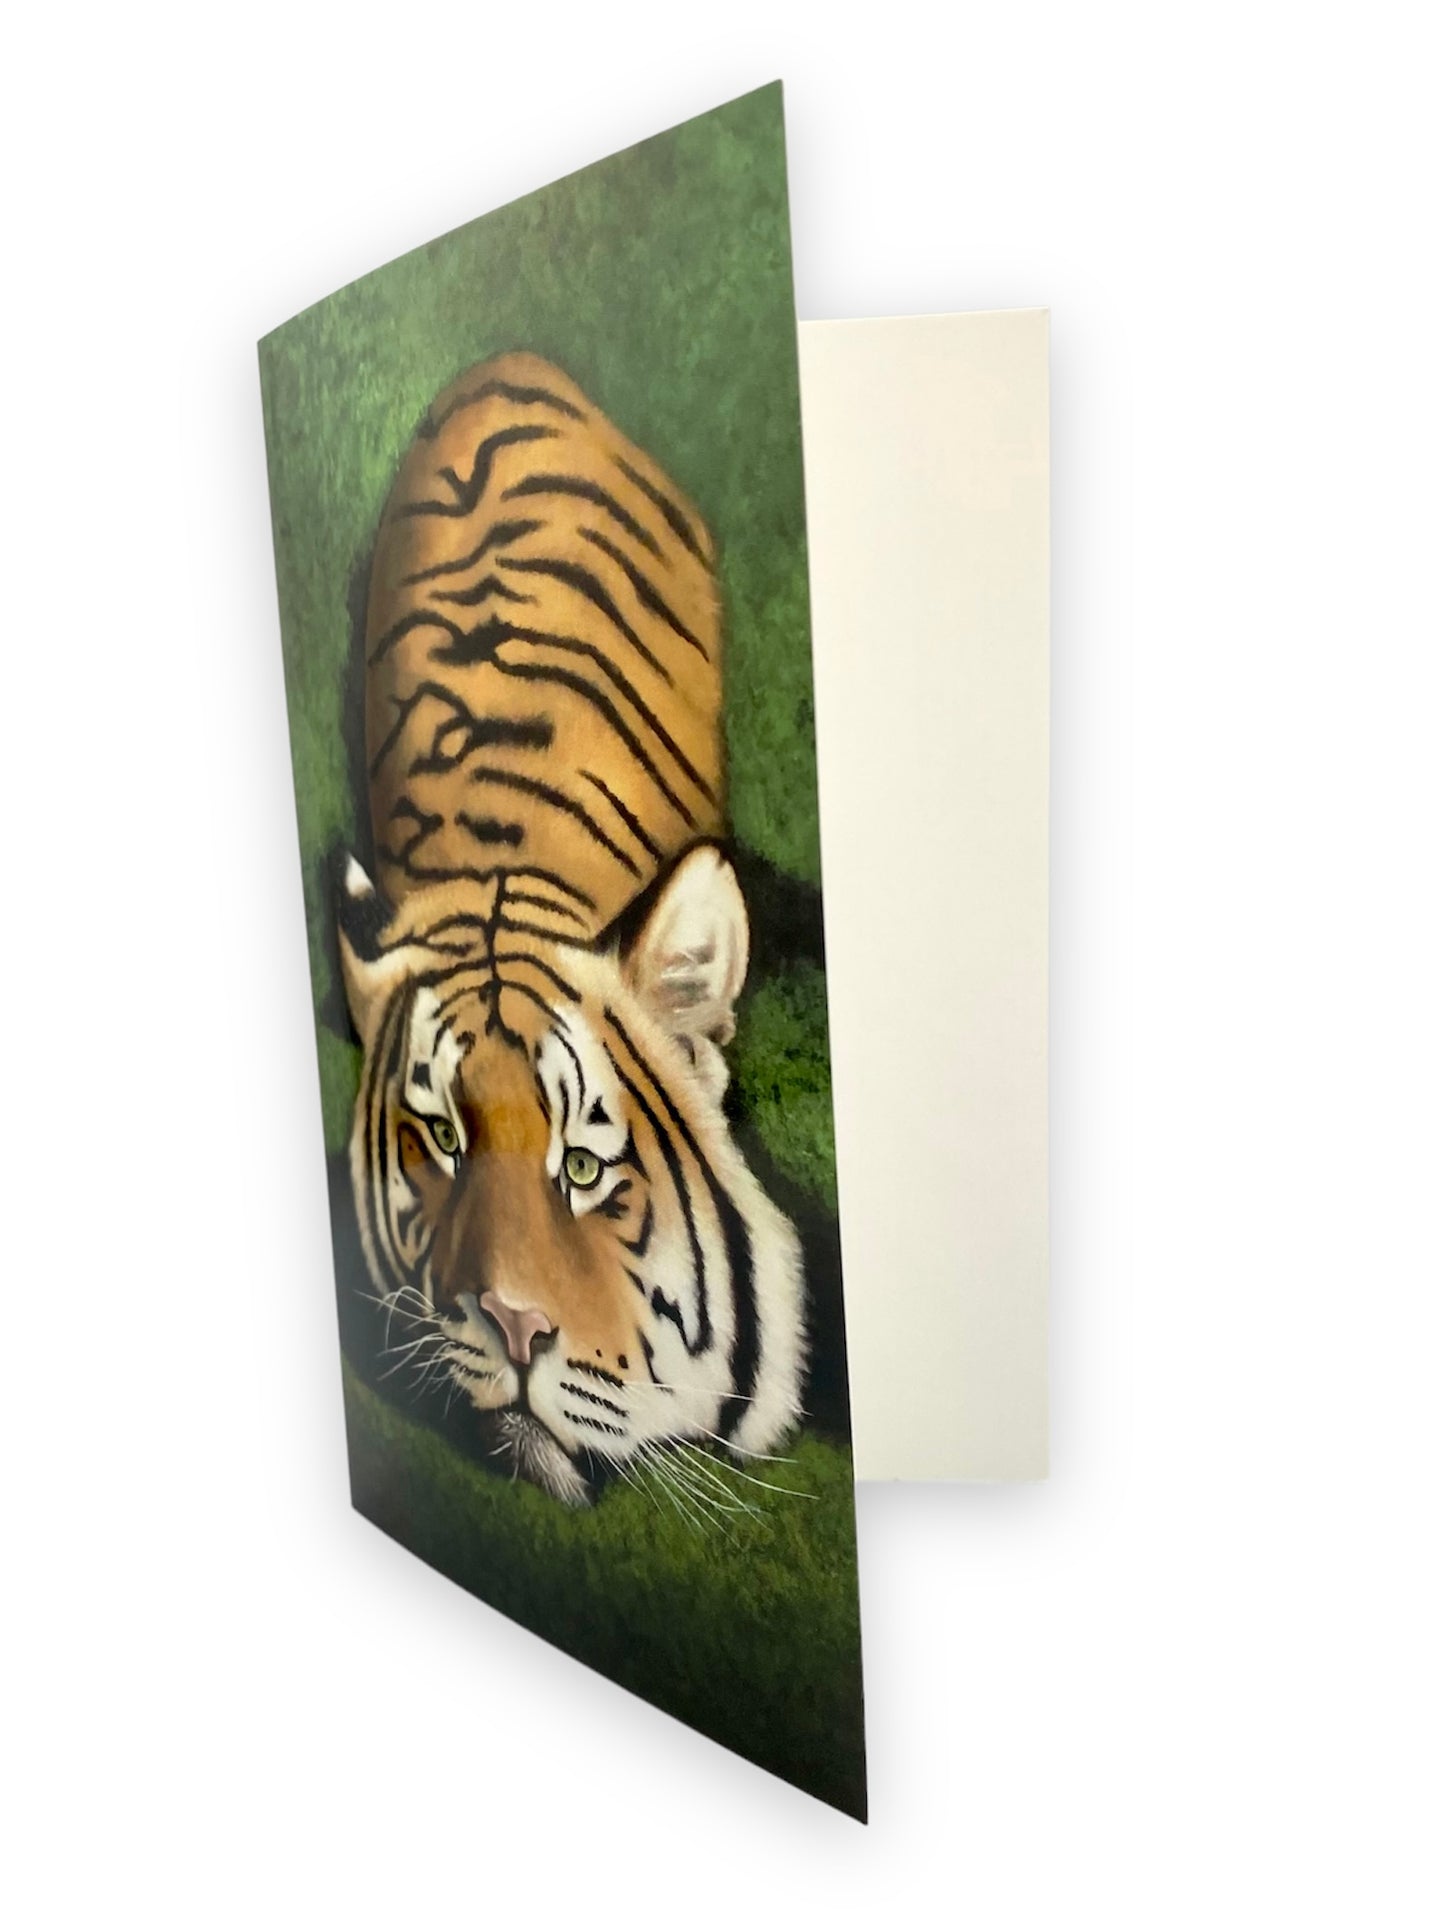 Tiger Art Card